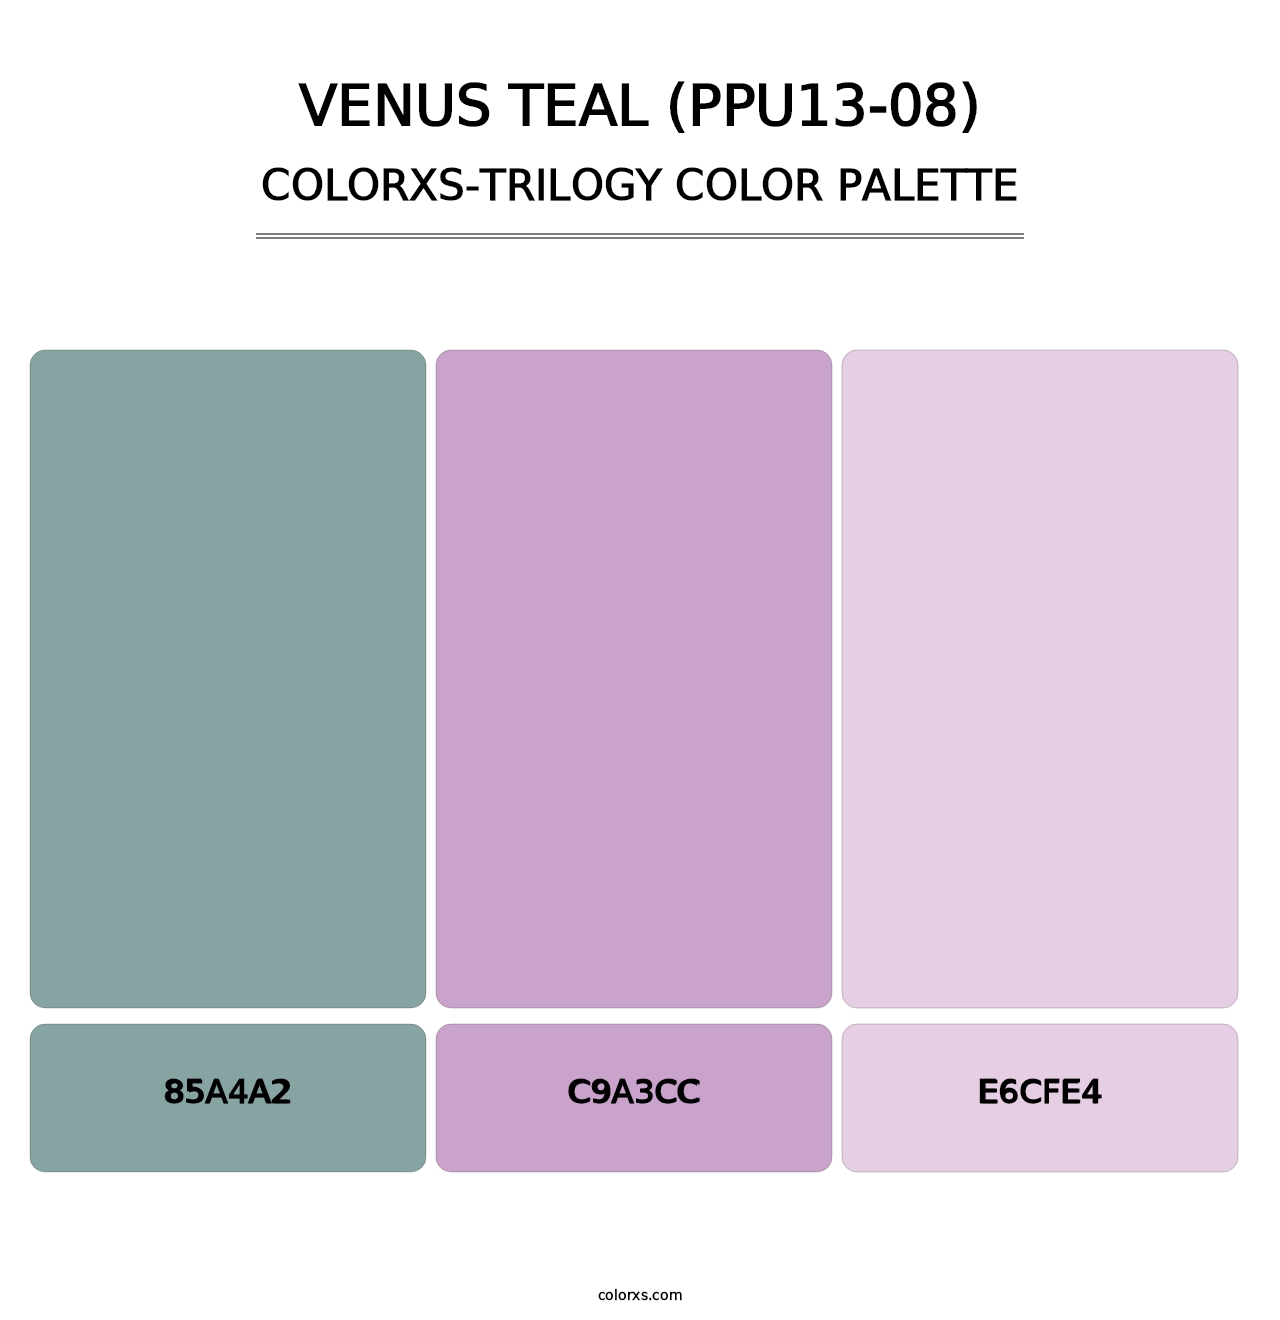 Venus Teal (PPU13-08) - Colorxs Trilogy Palette